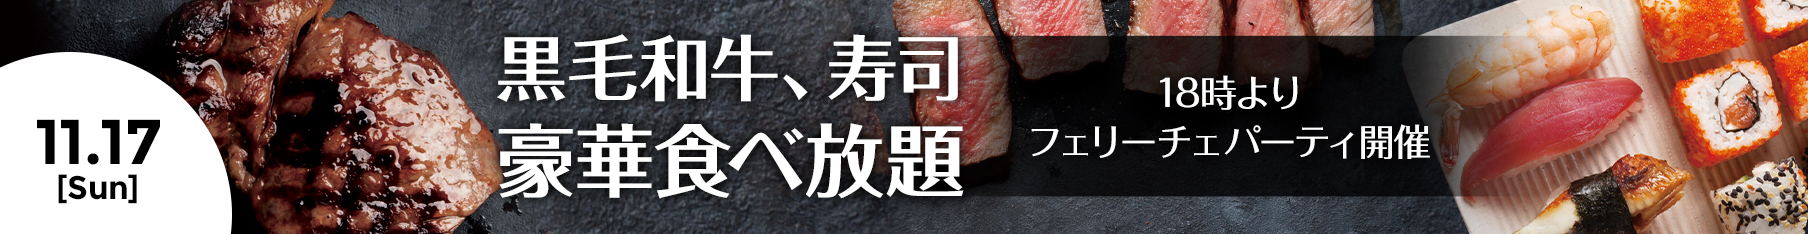 神戸牛、フォアグラetc 豪華フード食べ放題